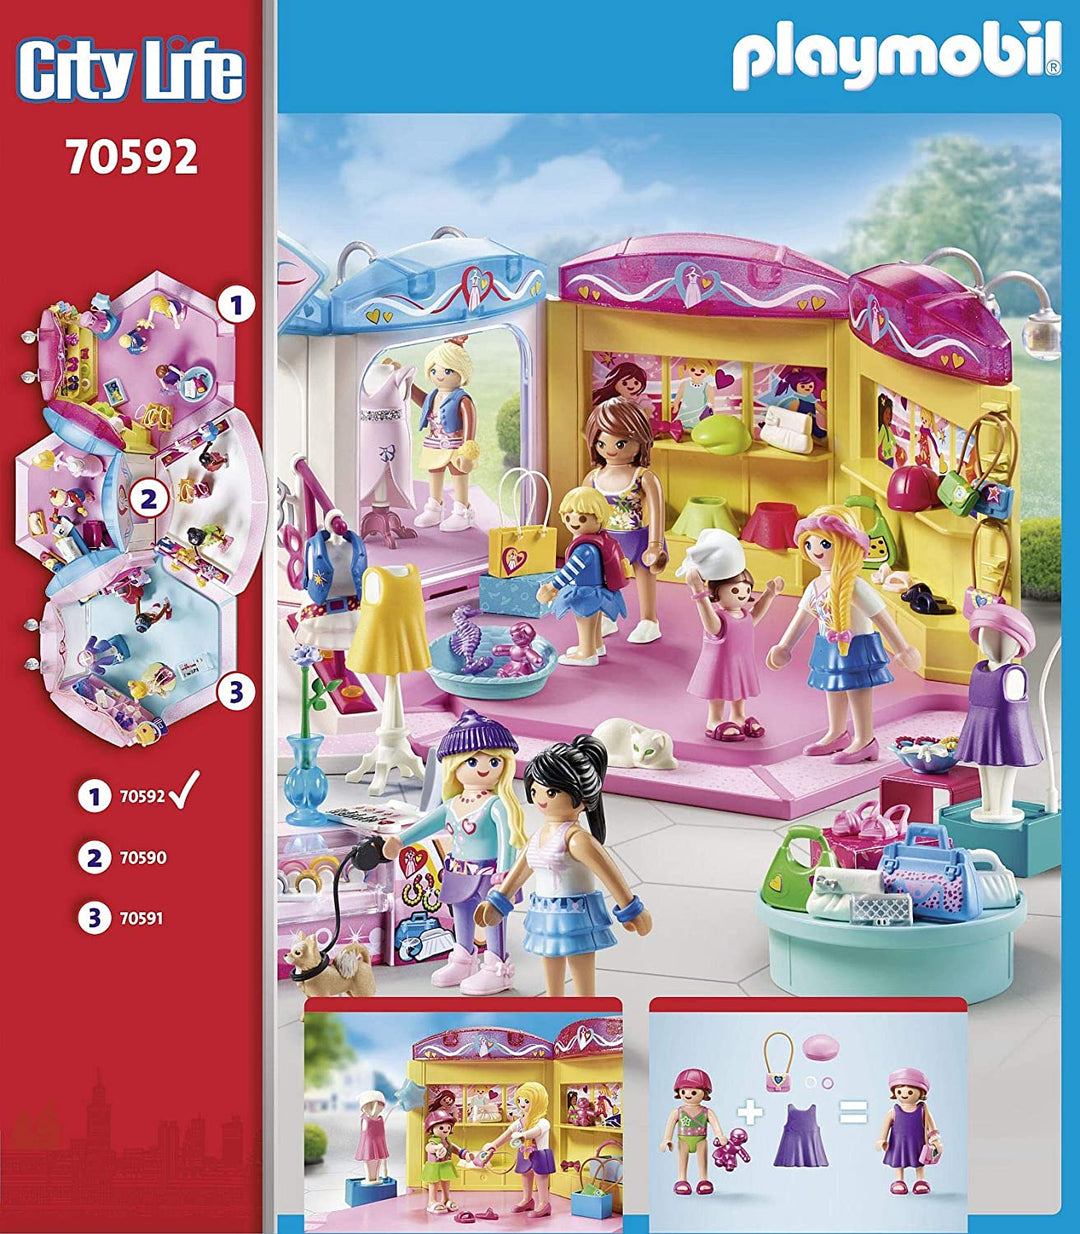 Playmobil 70592 City Life negozio di moda per bambini